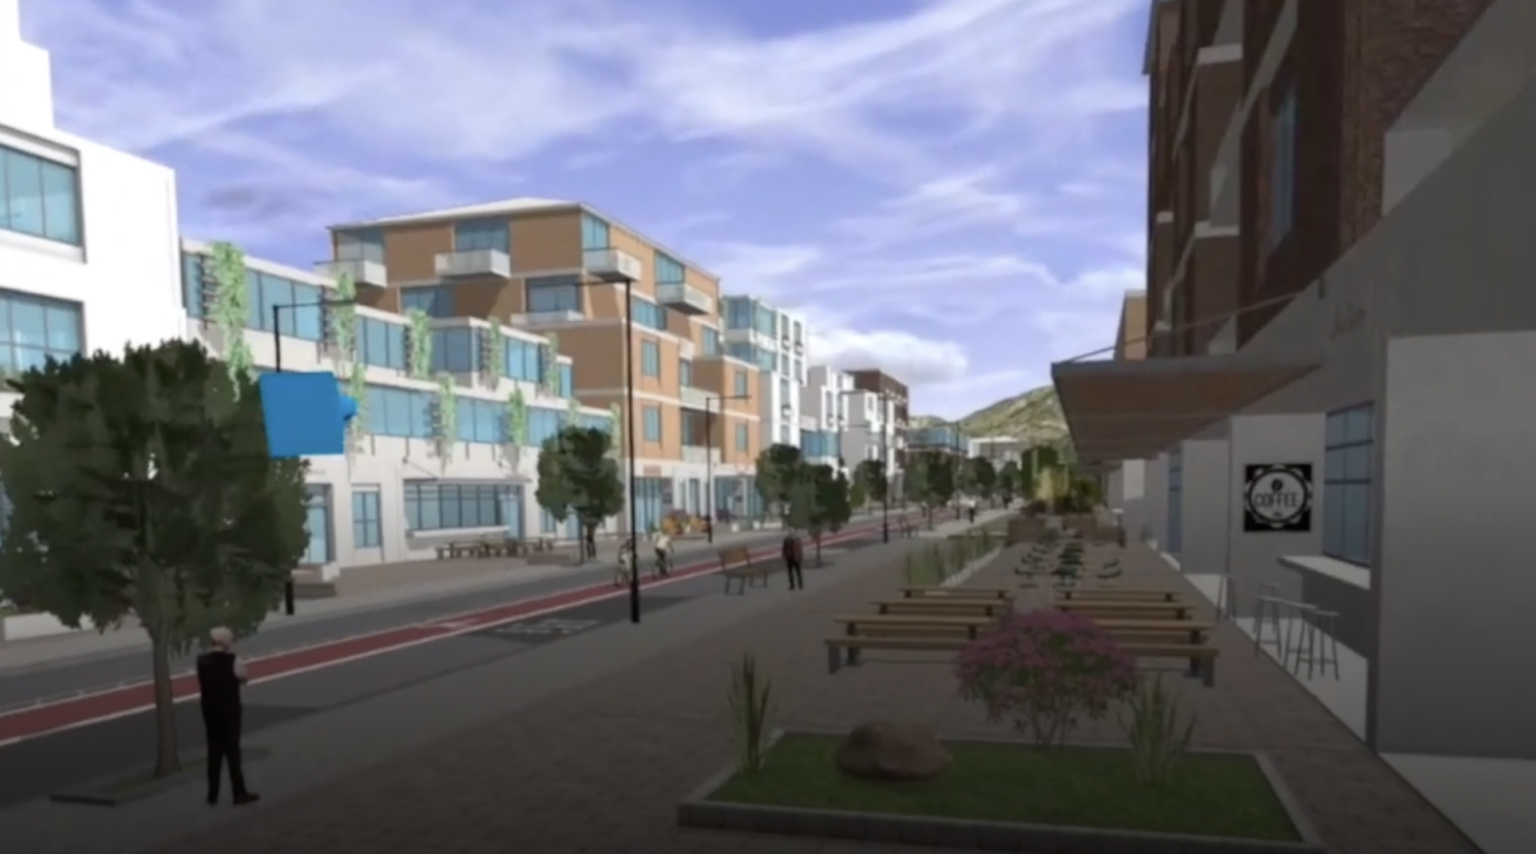 通过 VR 头显查看城市街区的 3D 场景，其中包括建筑物、道路和绿树